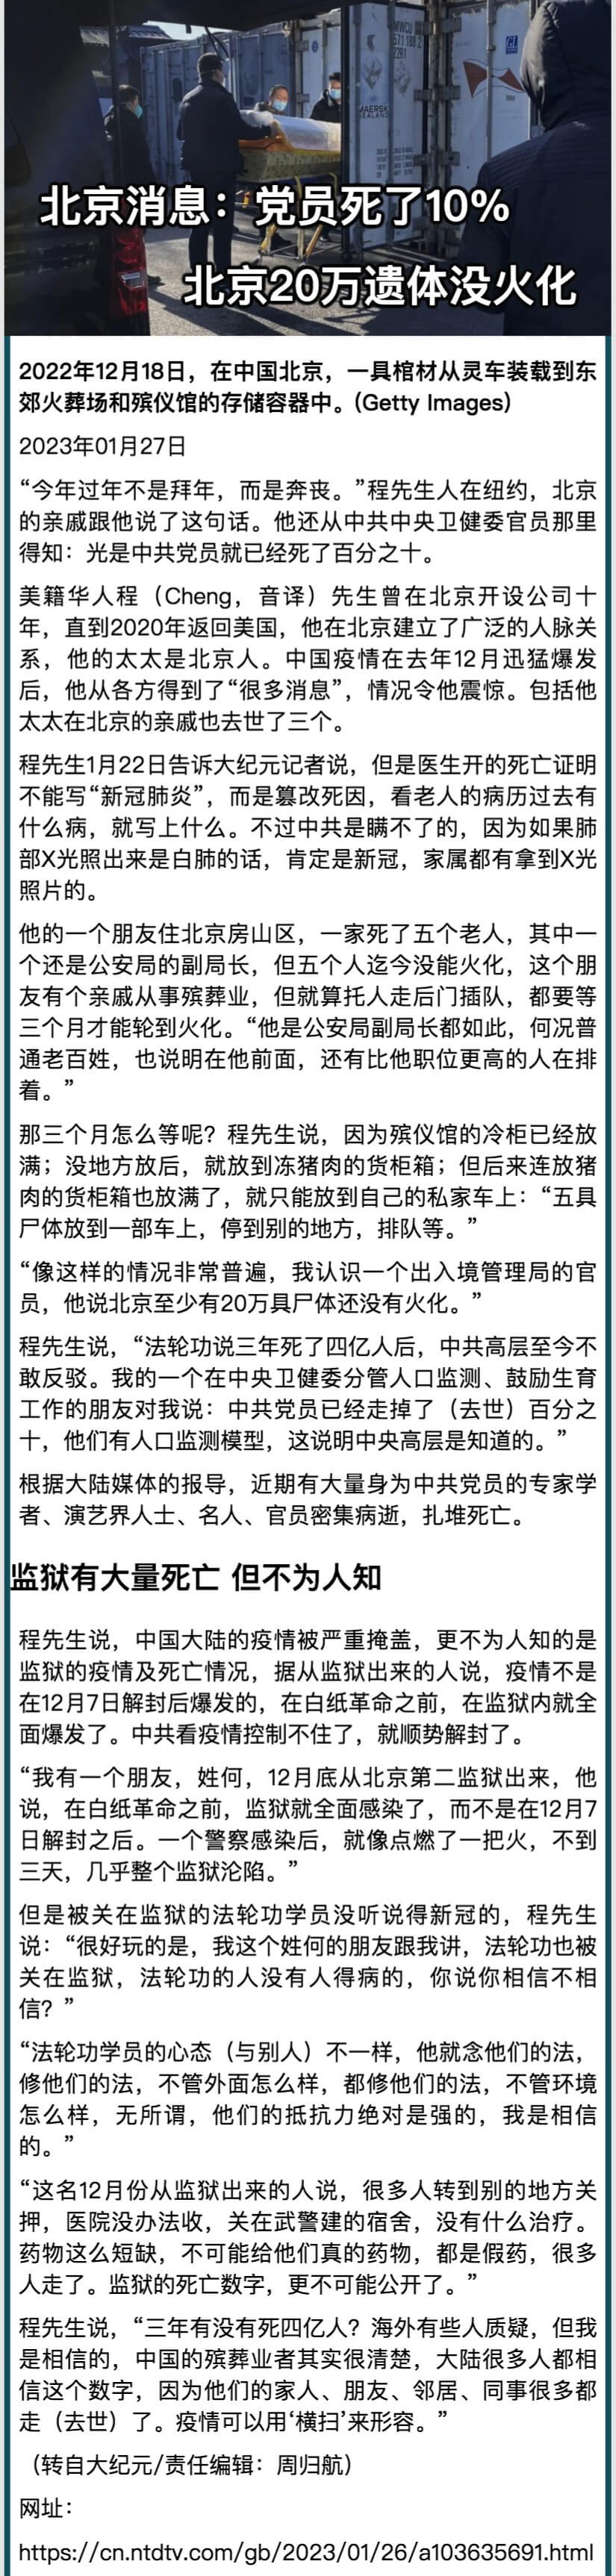 北京消息：黨員死了10% 北京20萬遺體沒火化.jpeg